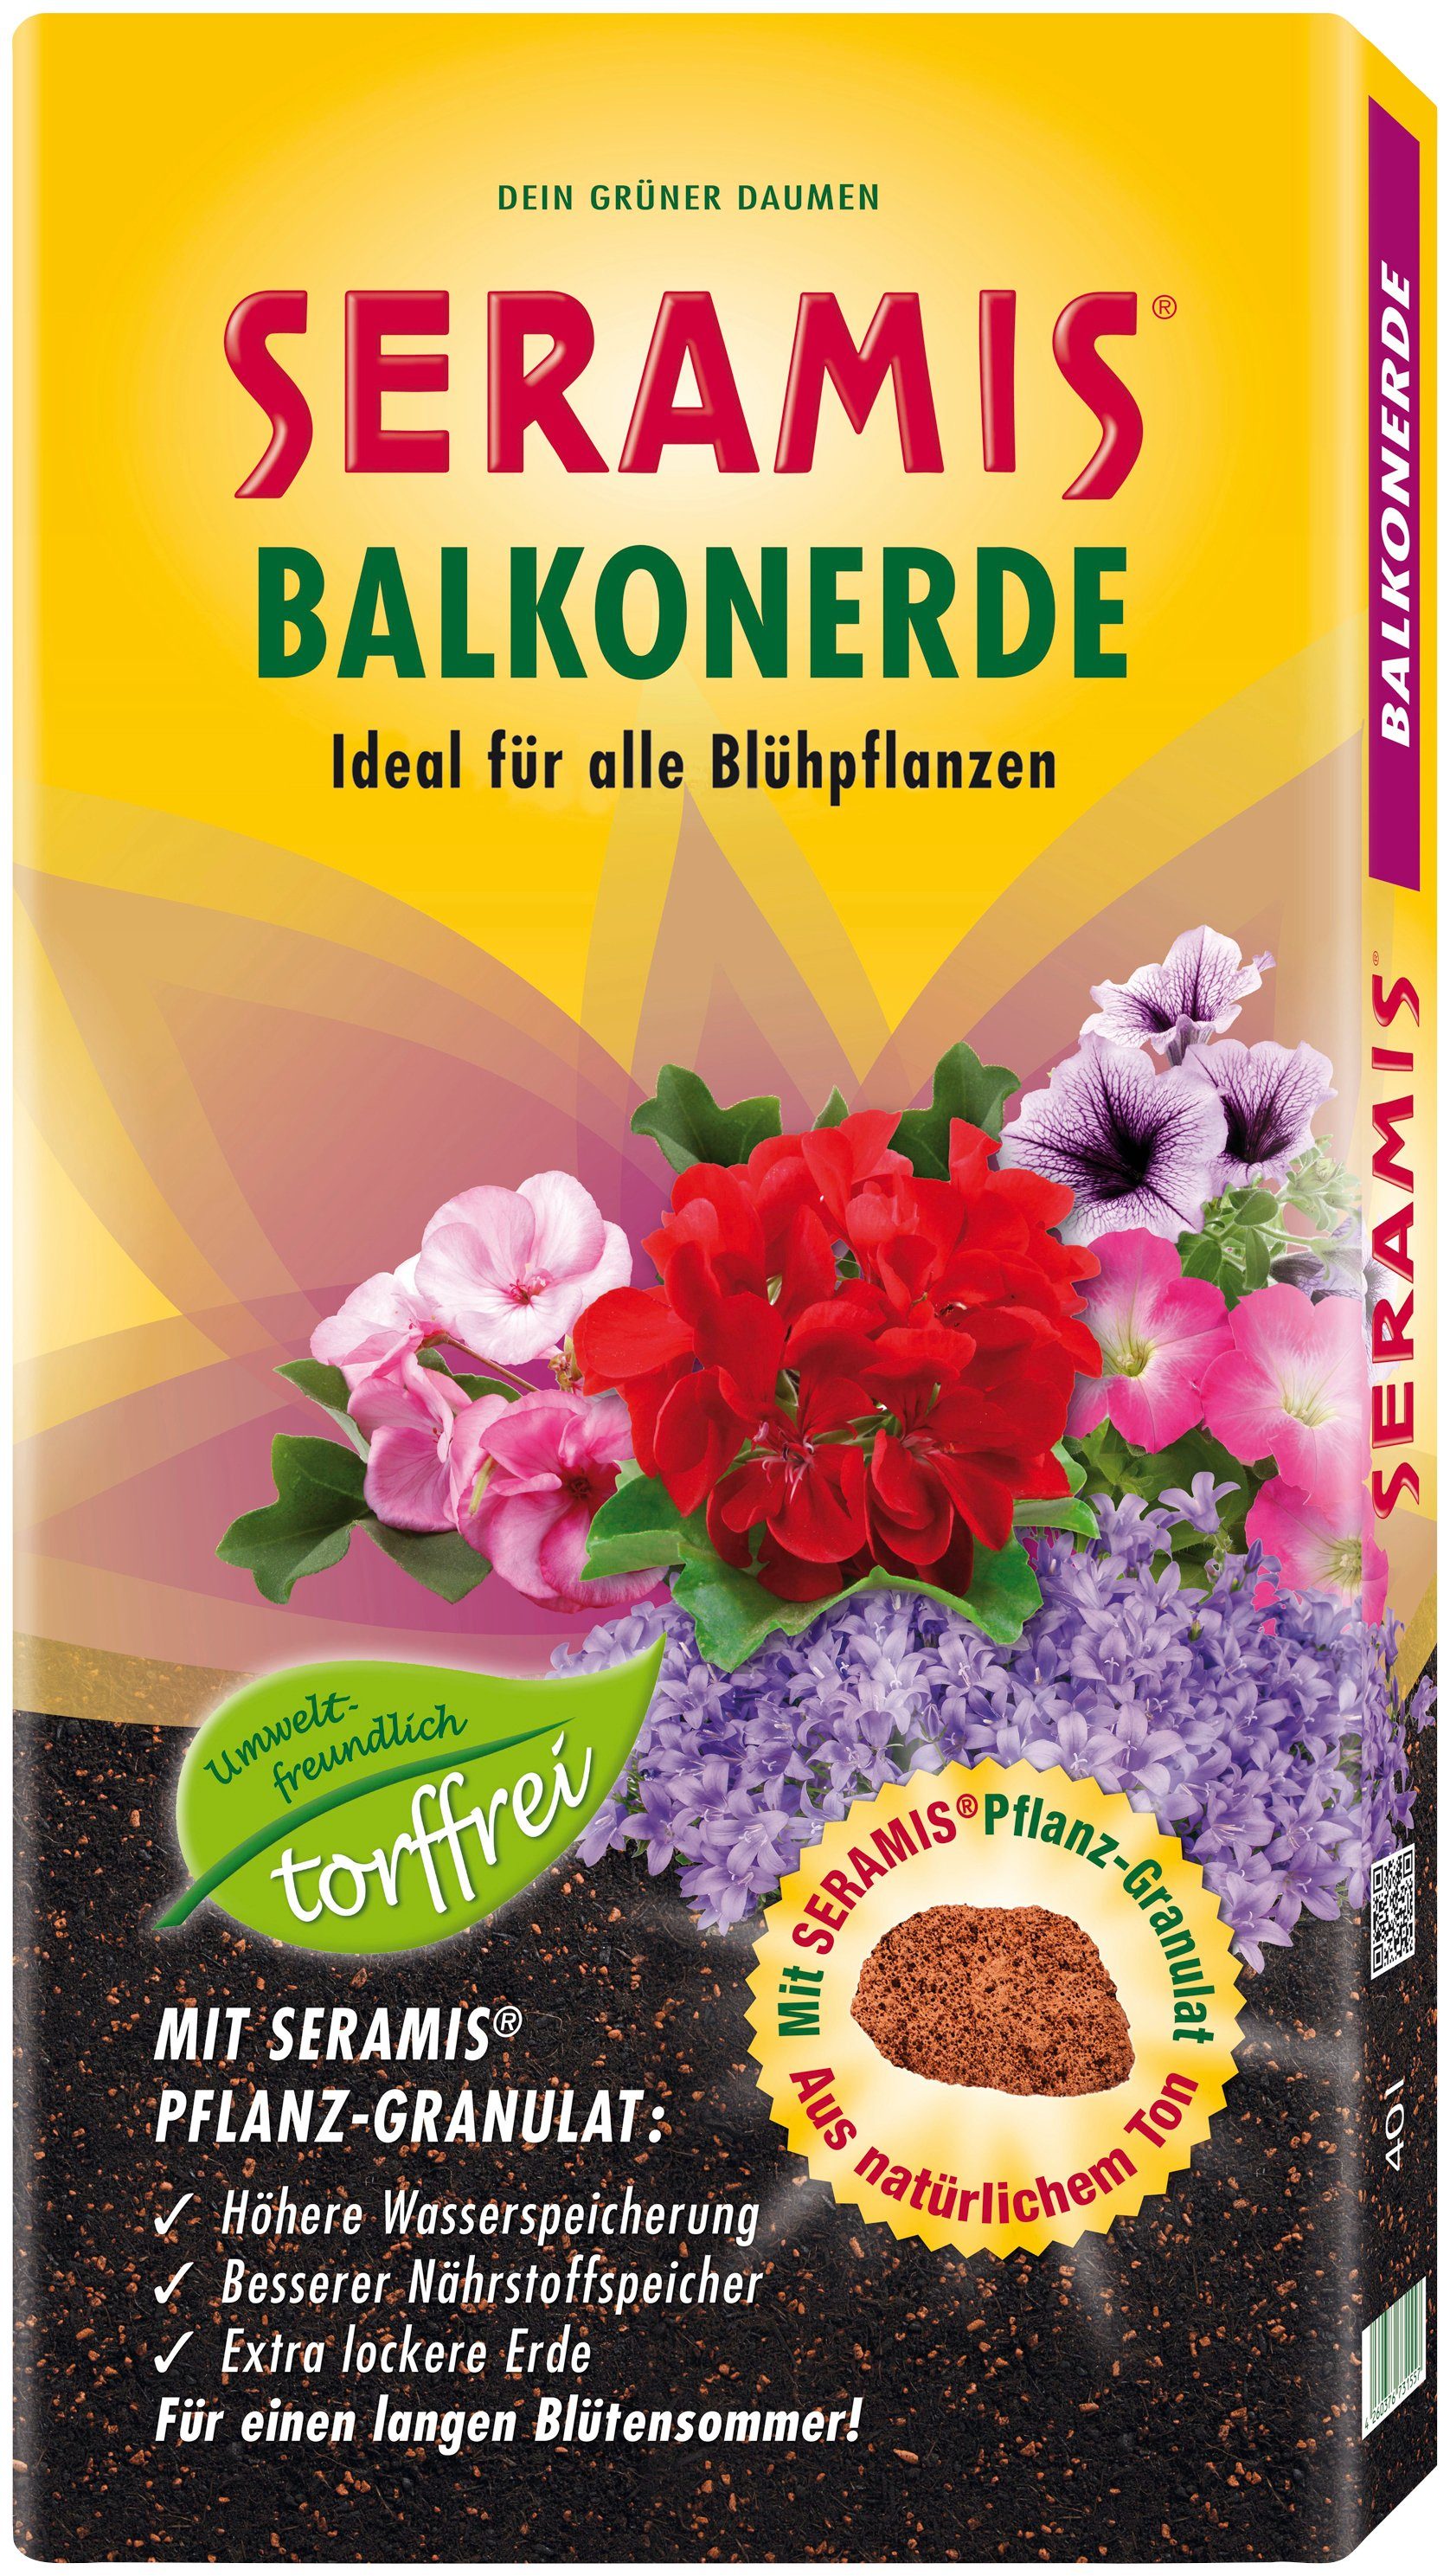 Seramis Blumenerde Bodenverbesserer, Balkonerde für Blühpflanzen, 40 Liter  online kaufen | OTTO